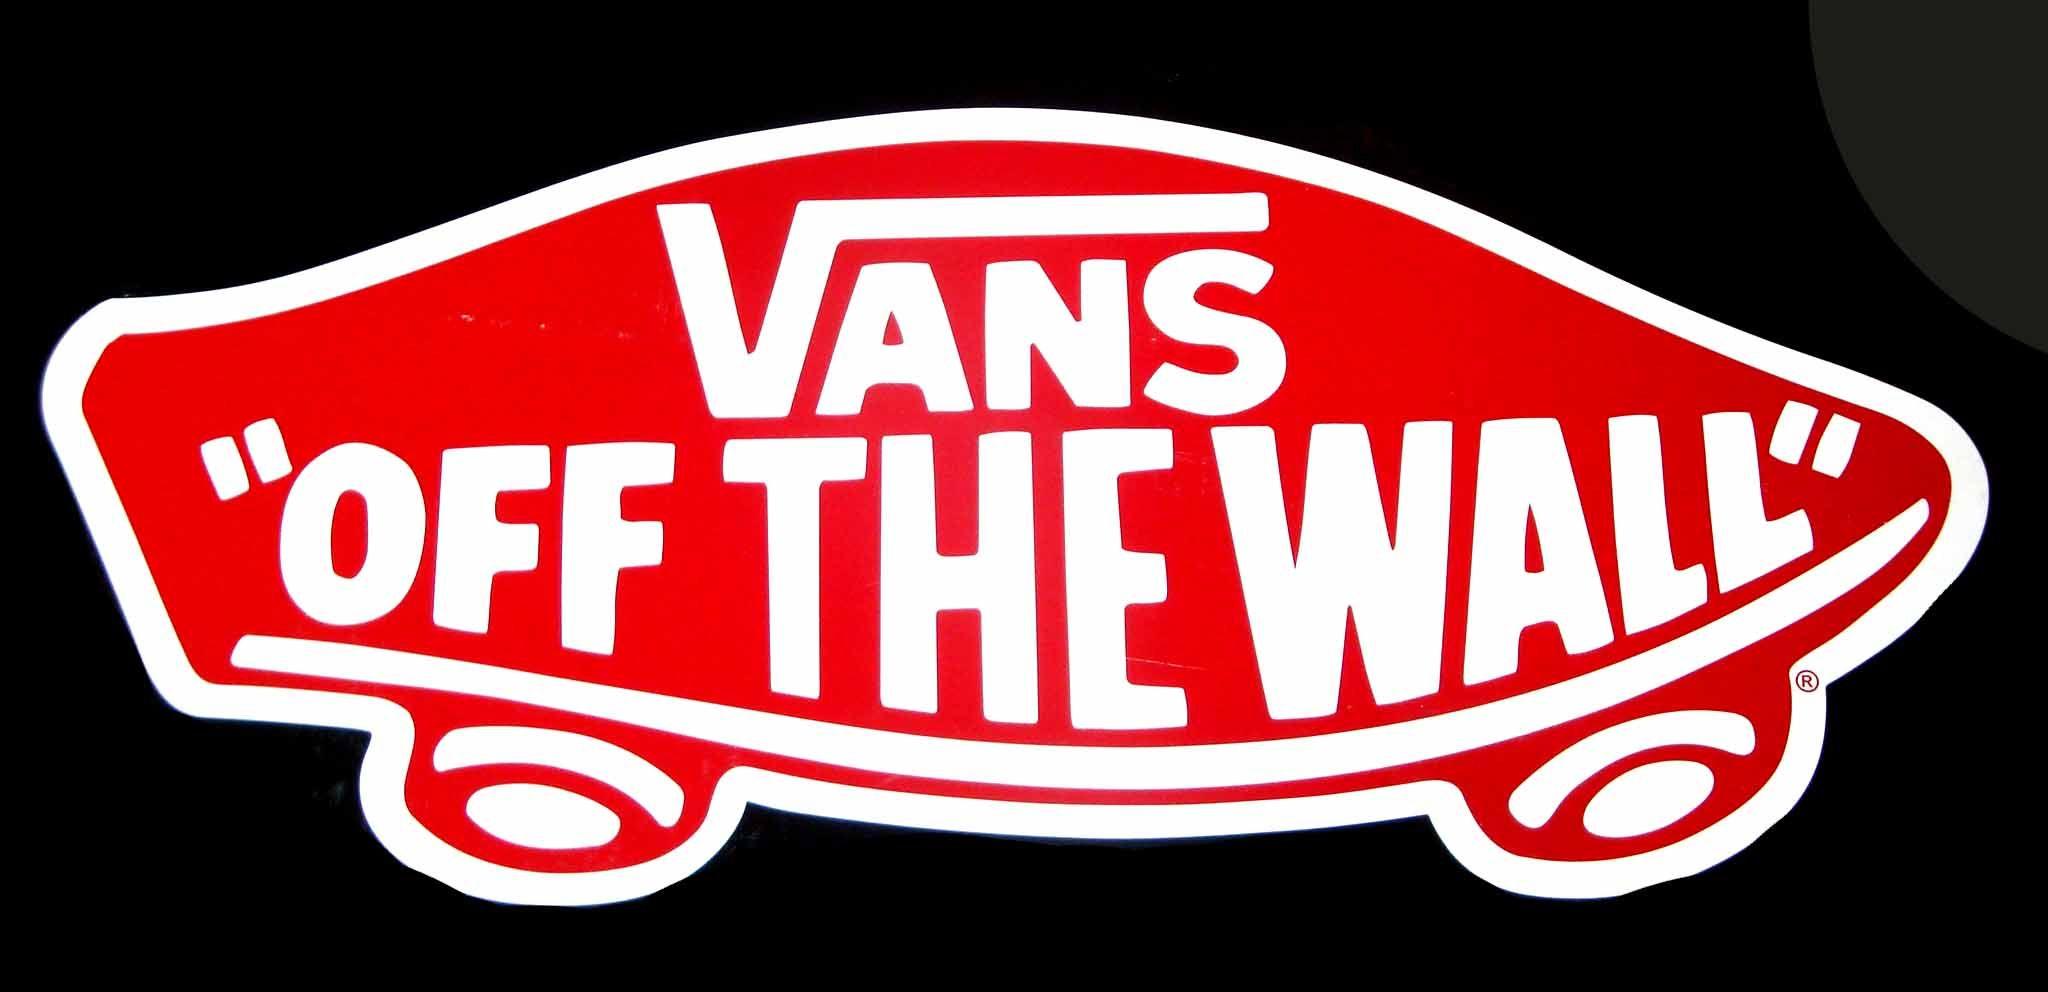 Off the Wall Vans Shoes Logo - Vans #logo @Vans Fashion Off The Wall Off The Wall | Whatever floats ...